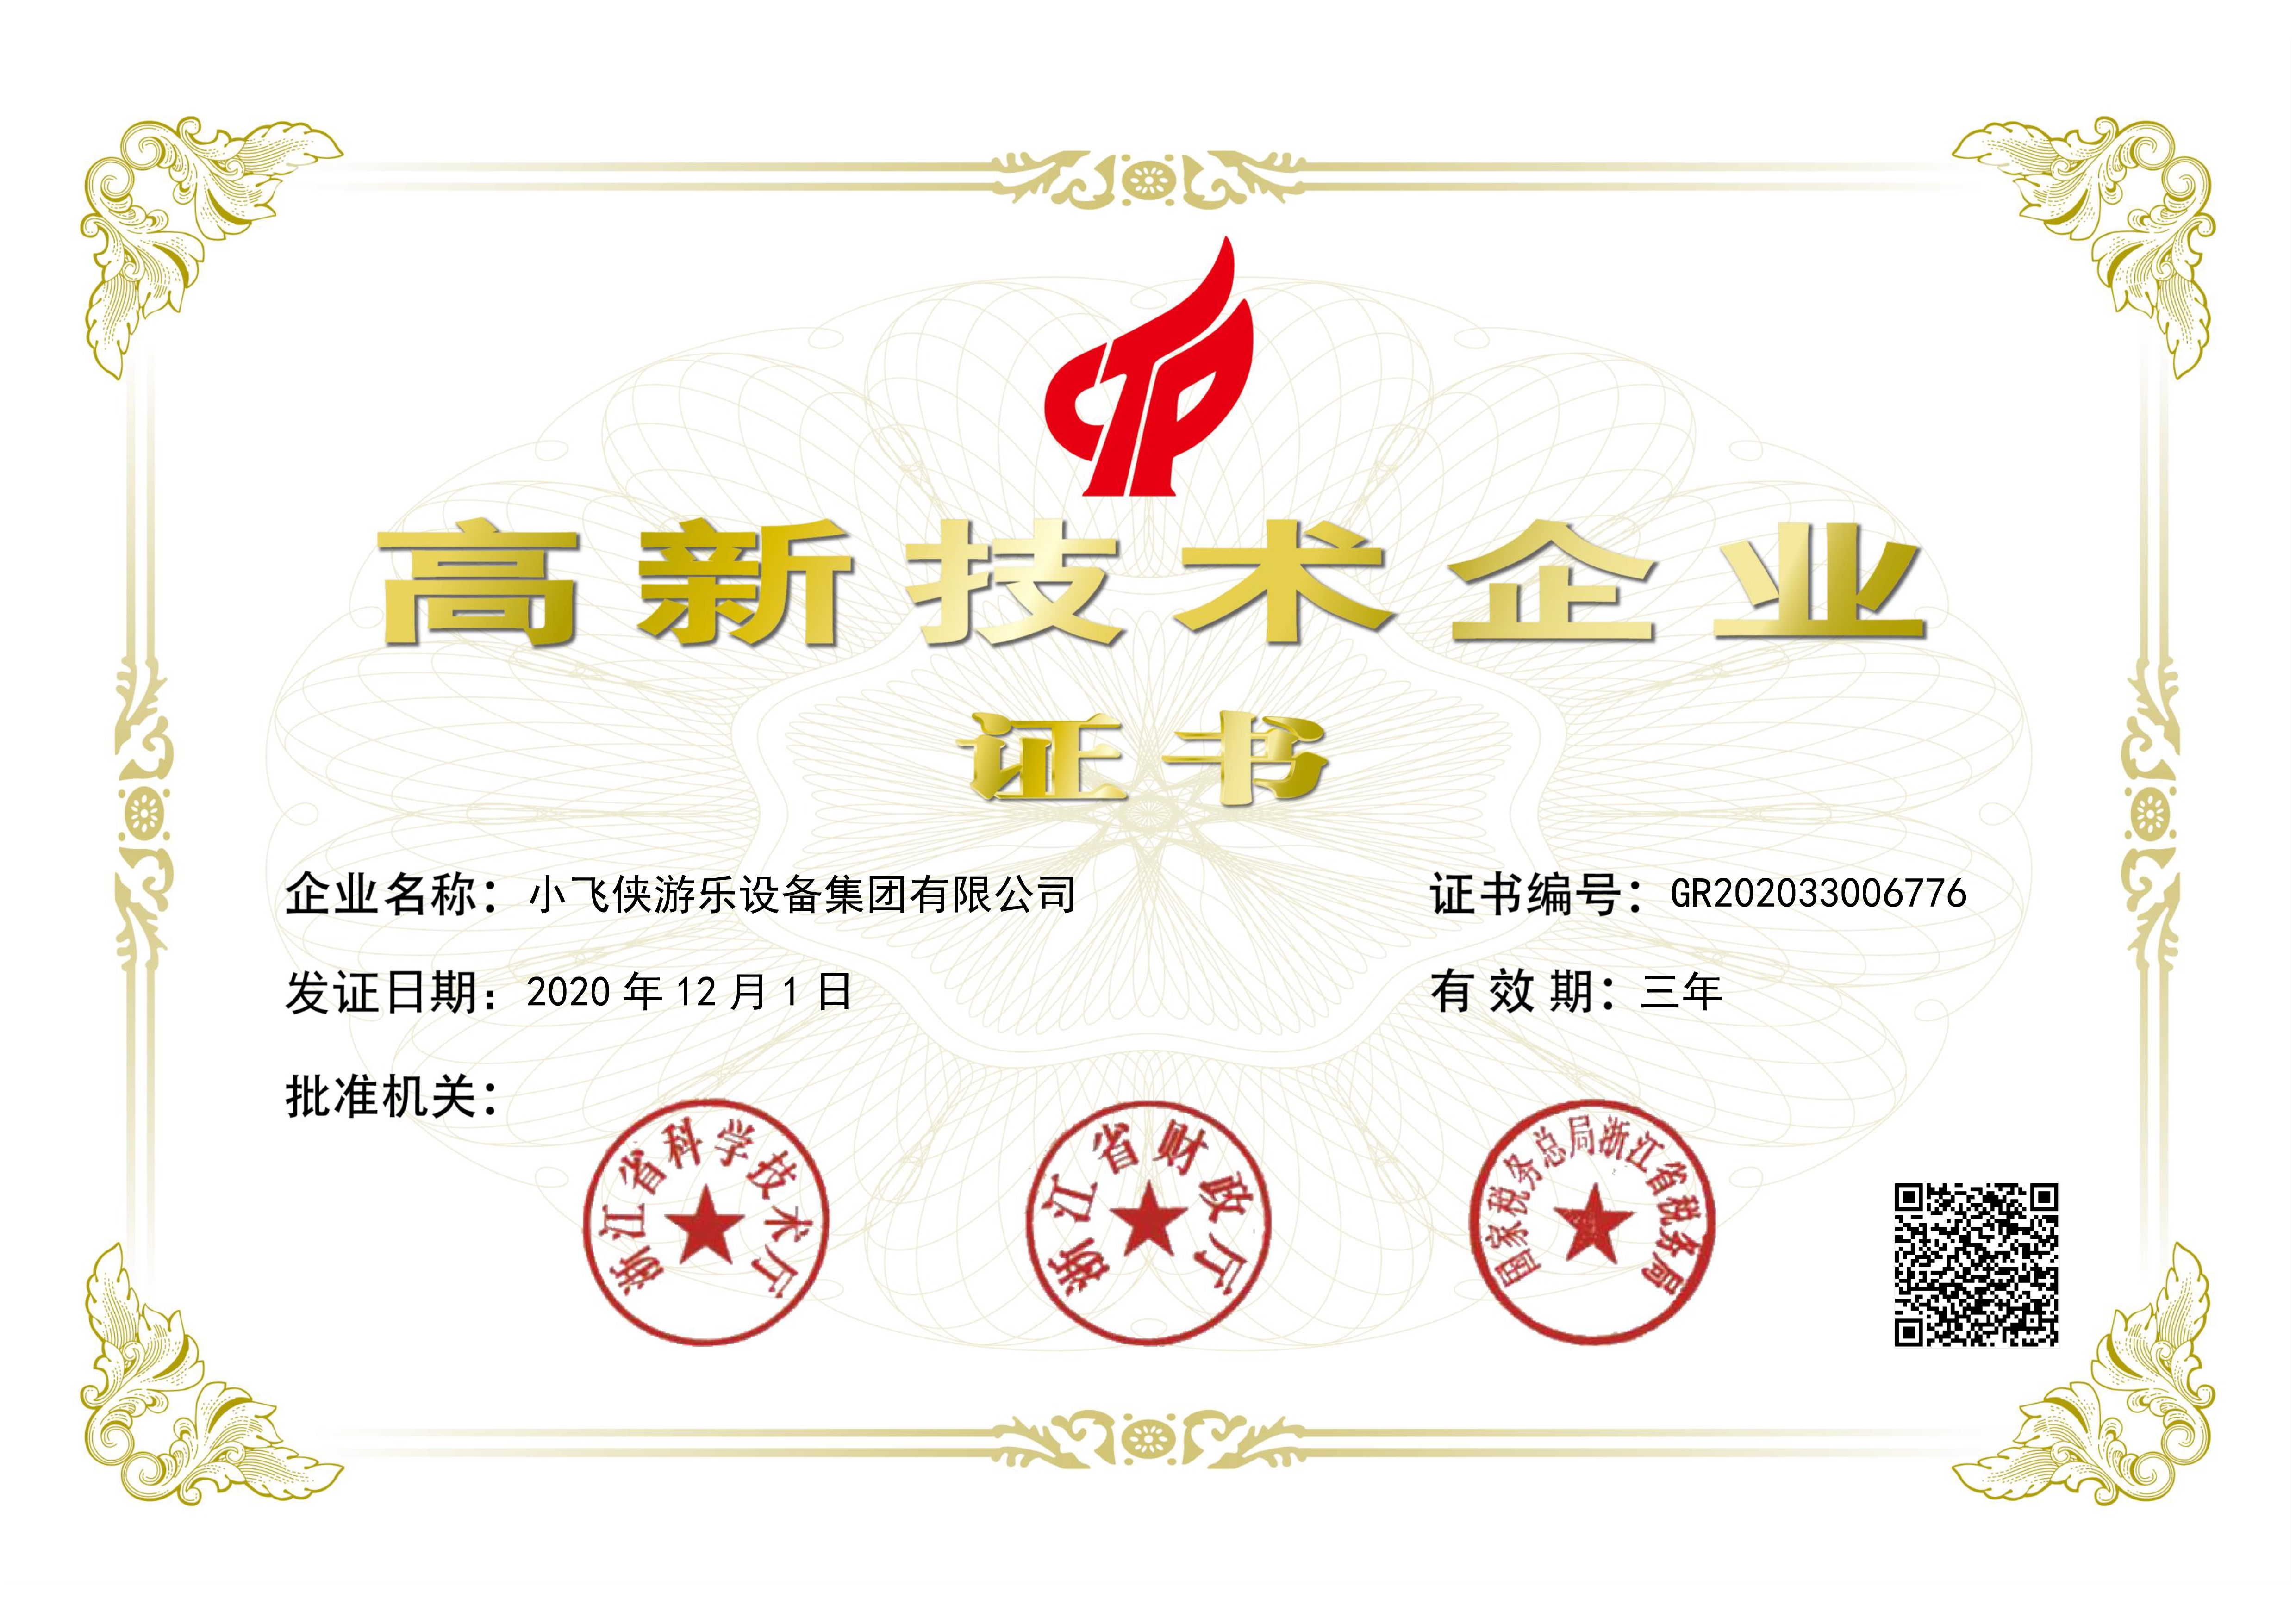 Xiaofeixia Group Got National High Tech Enterprises Certificate